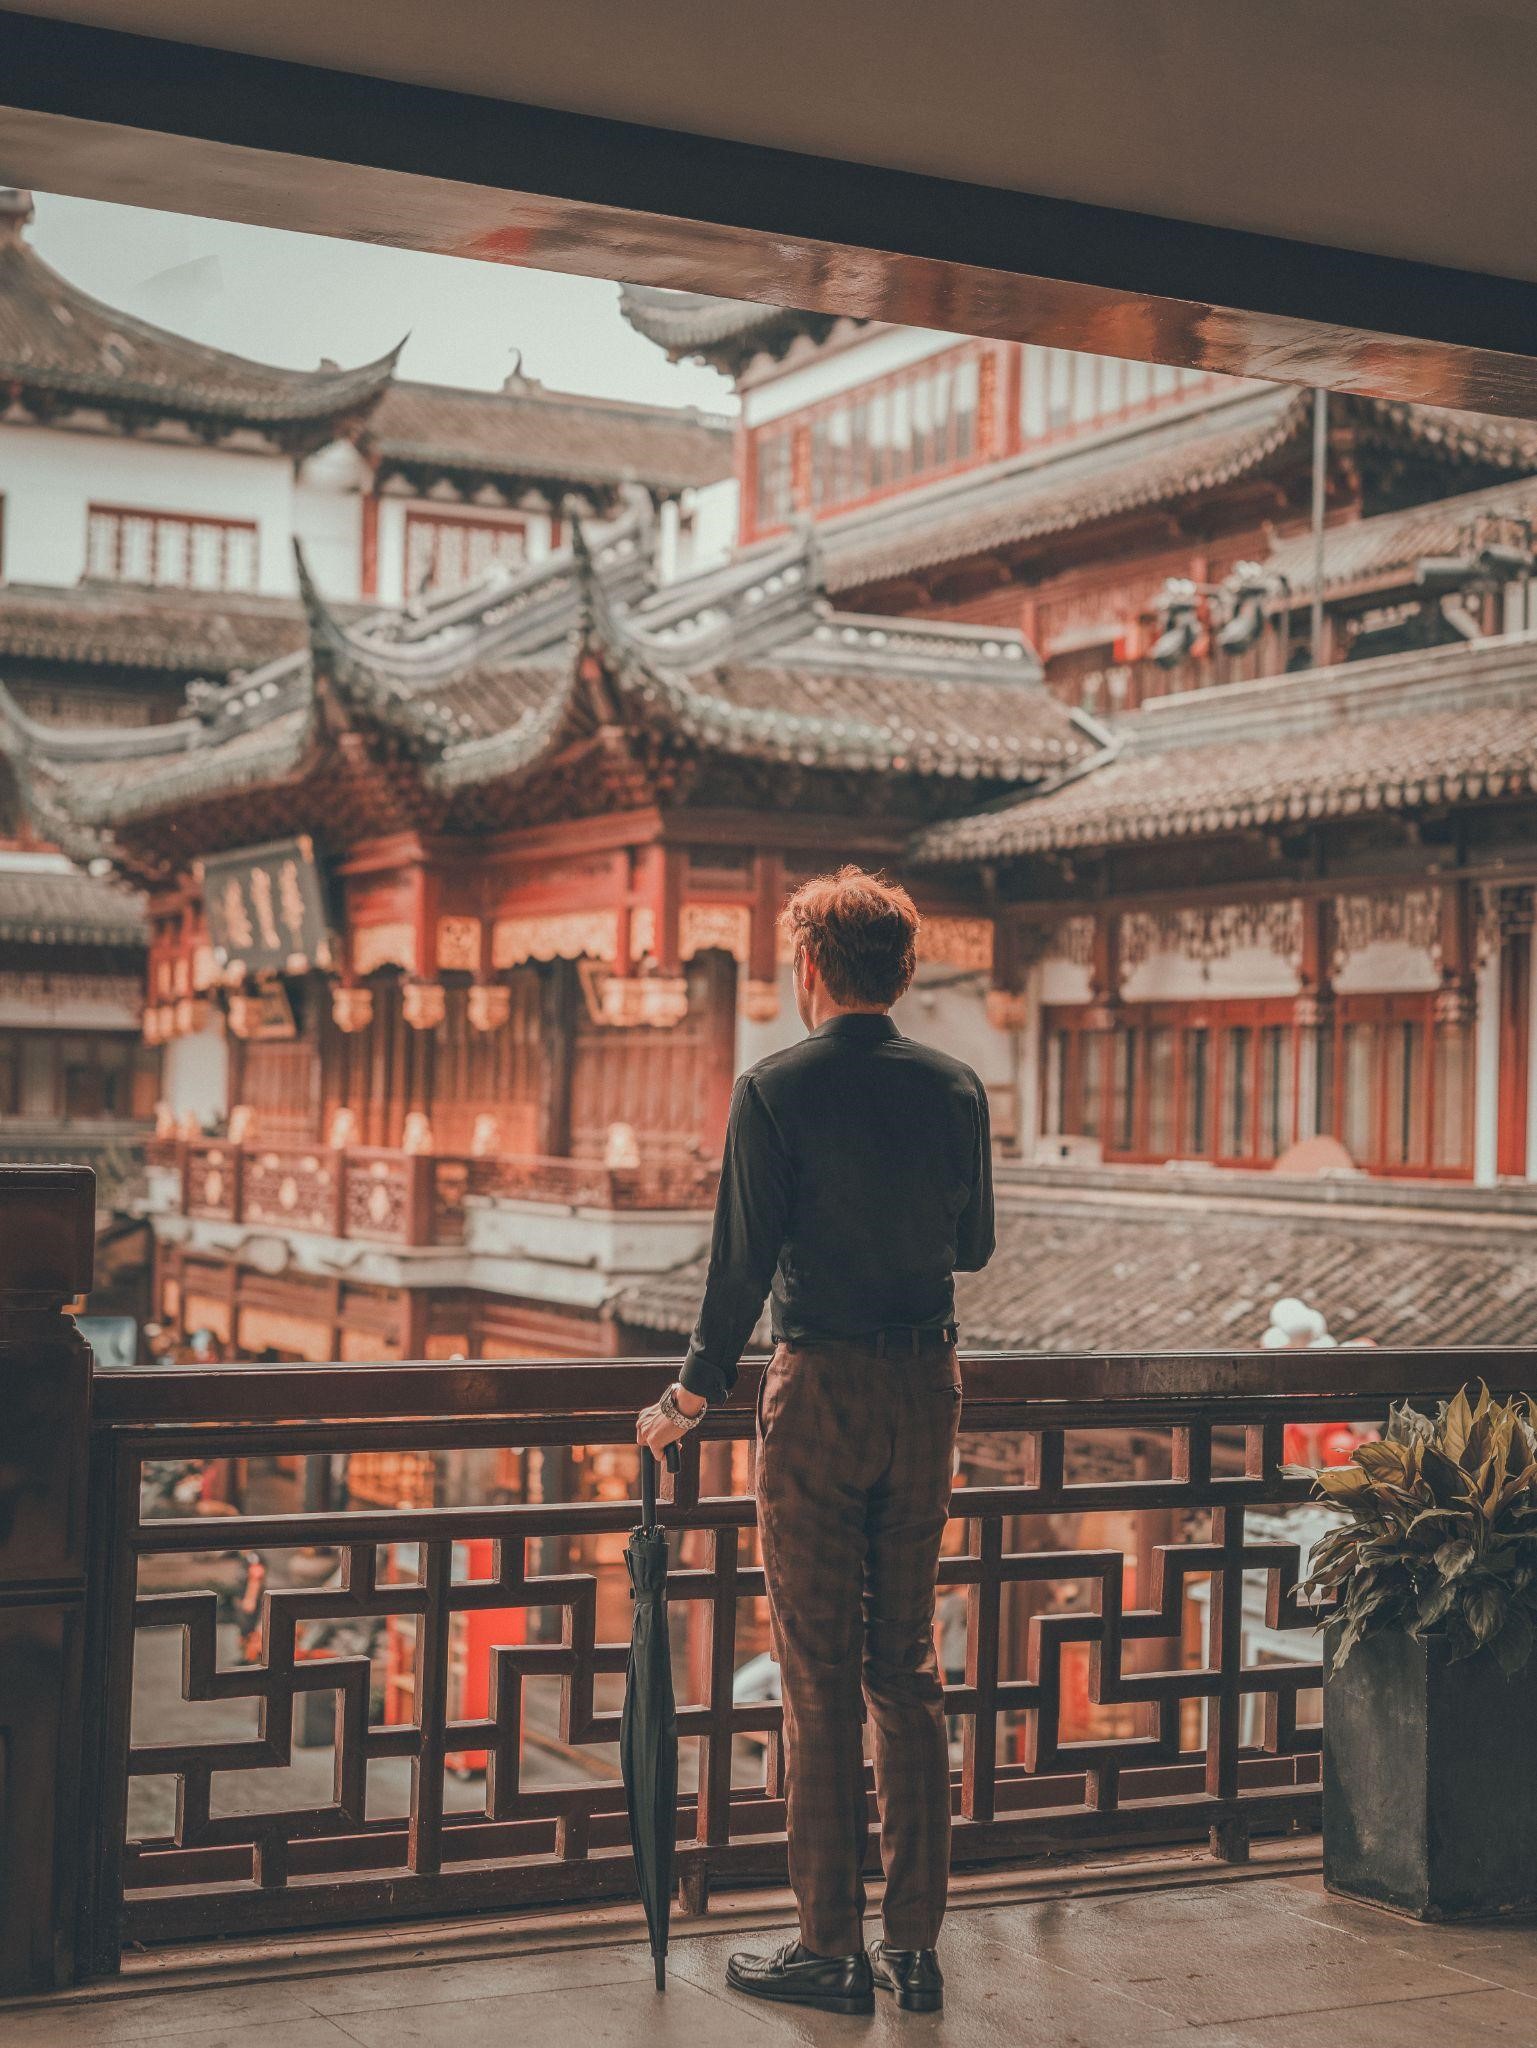 A Trung Travel: Chia sẻ kinh nghiệm du lịch Trung Quốc đáng nhớ - ảnh 3